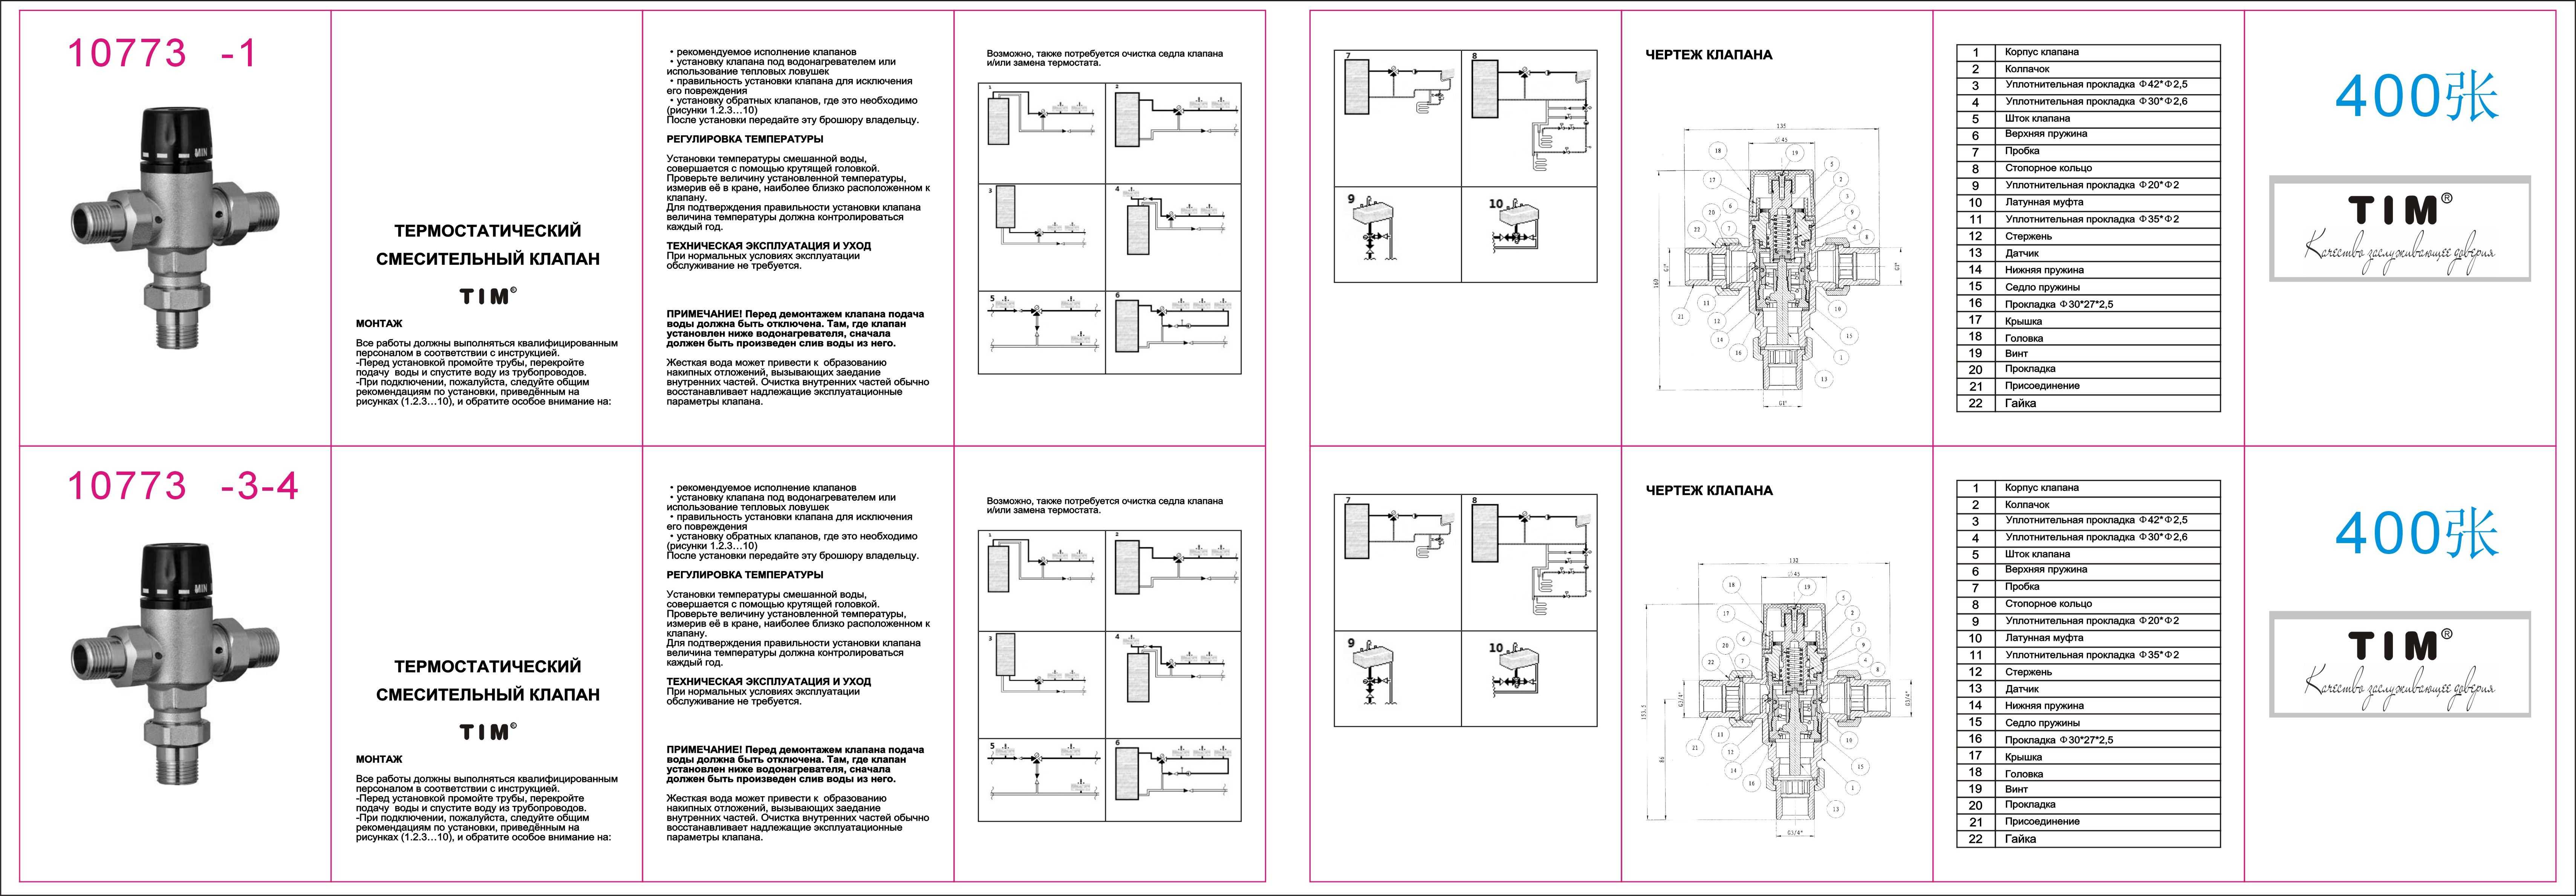 Монтаж и схема обвязки фанкойлов: систем вентиляции, кондиционирования, теплового оборудования.